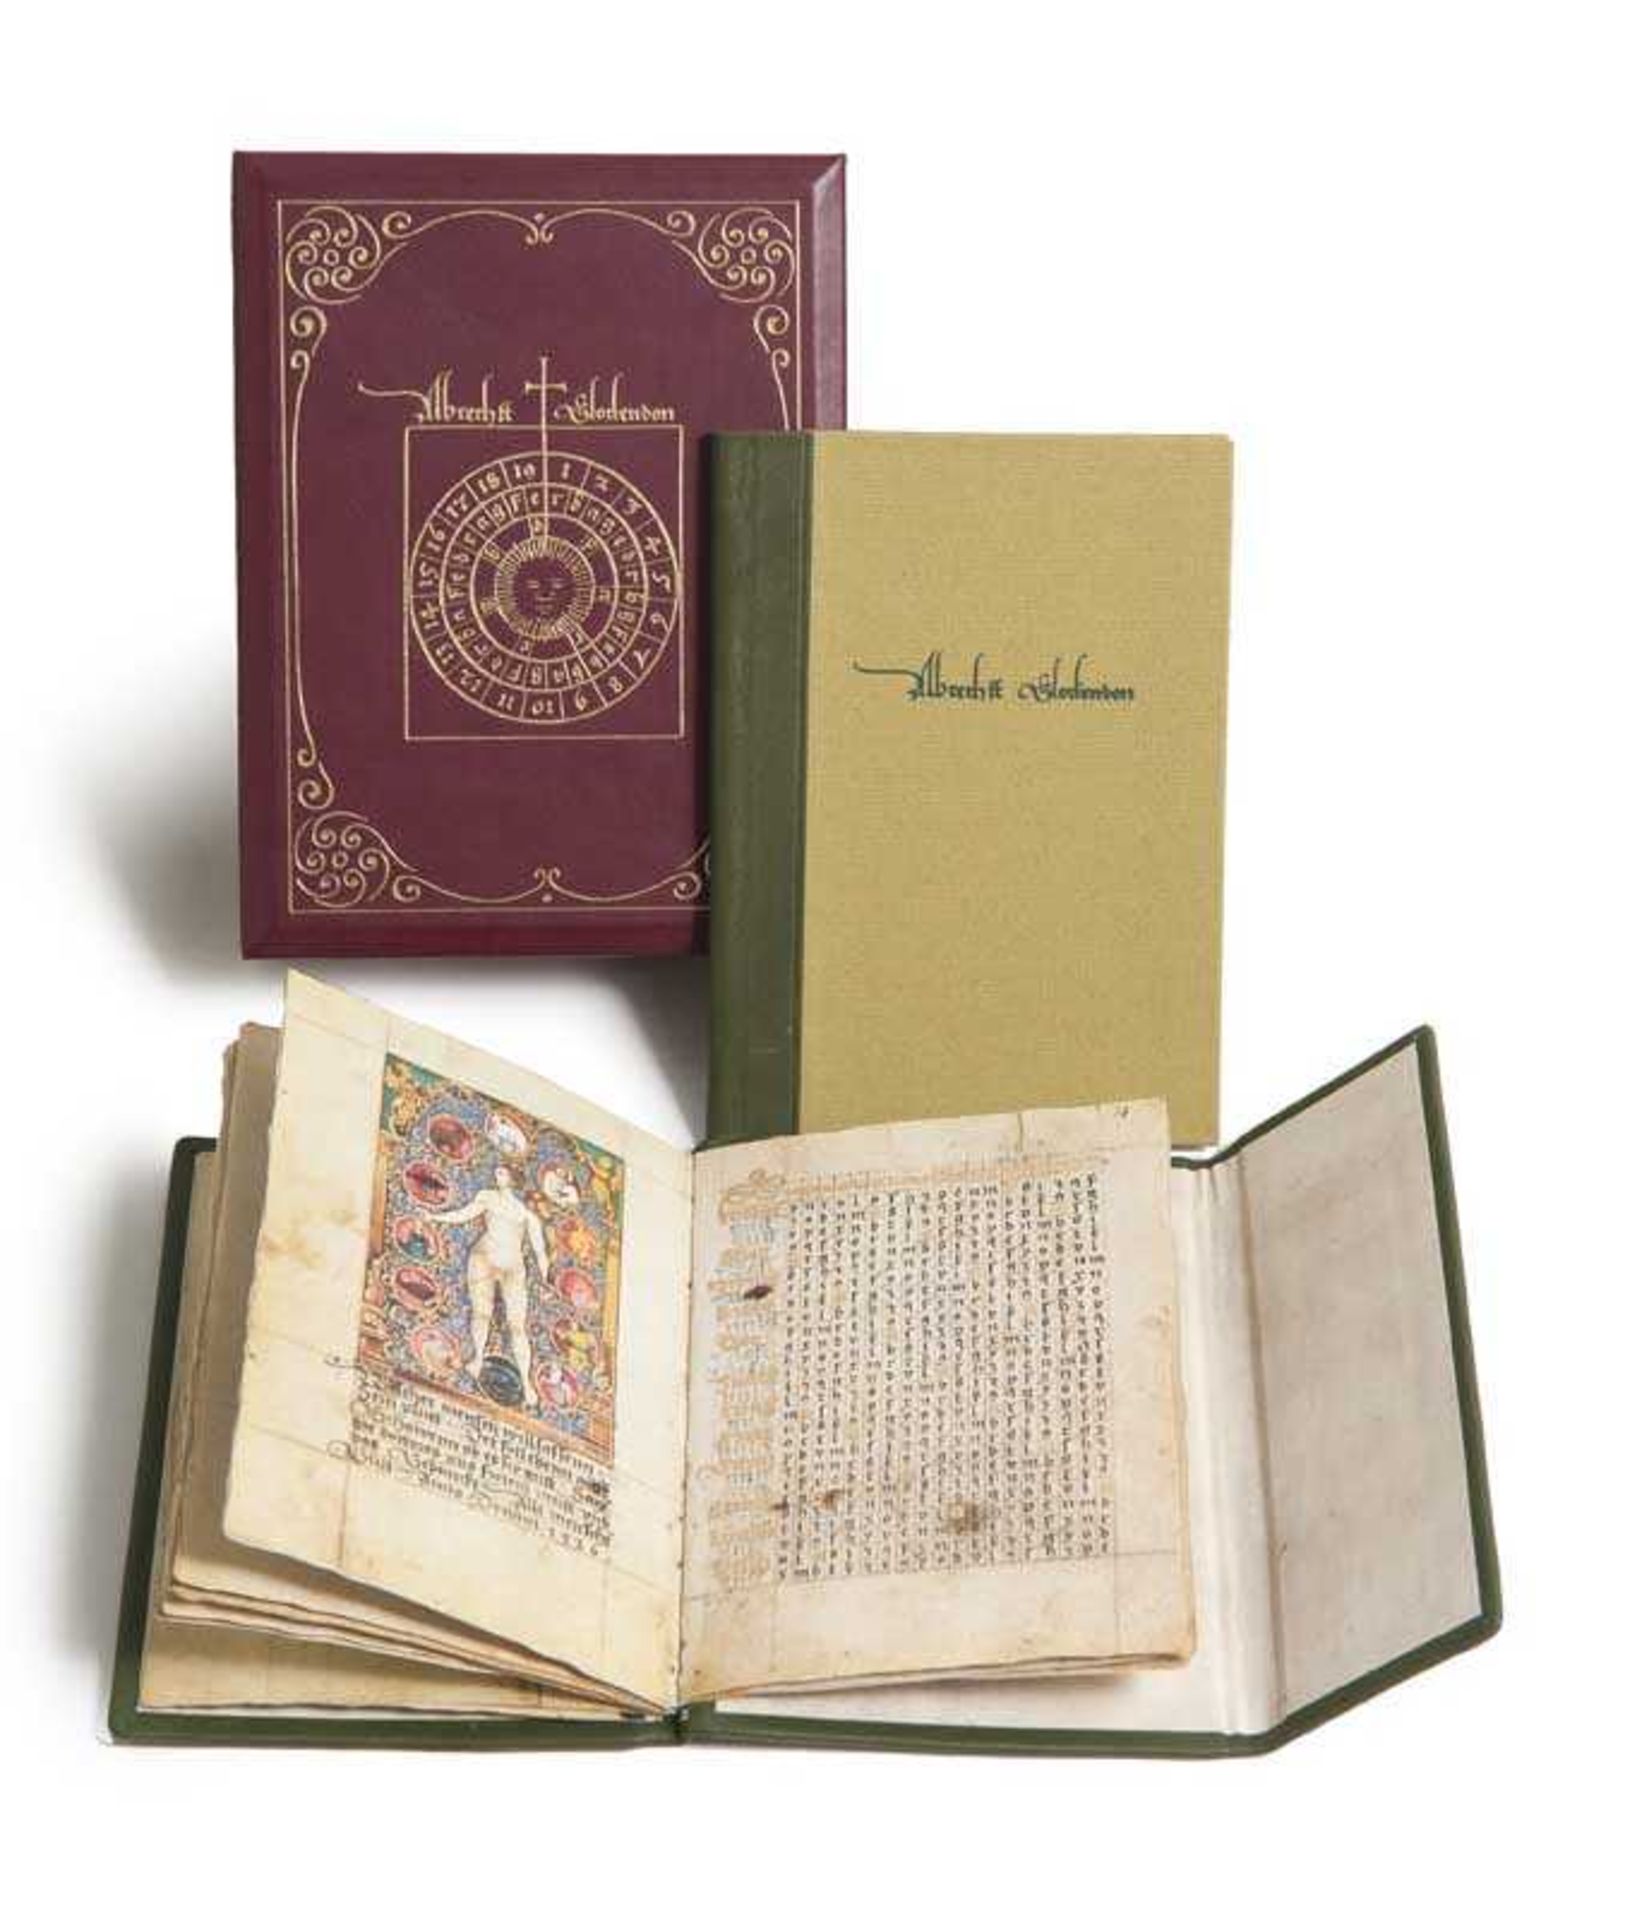 Faksimile - - Glockendon, Albrecht. Das goldene Kalenderbuch von 1526. Ms. germ. oct. 9 der